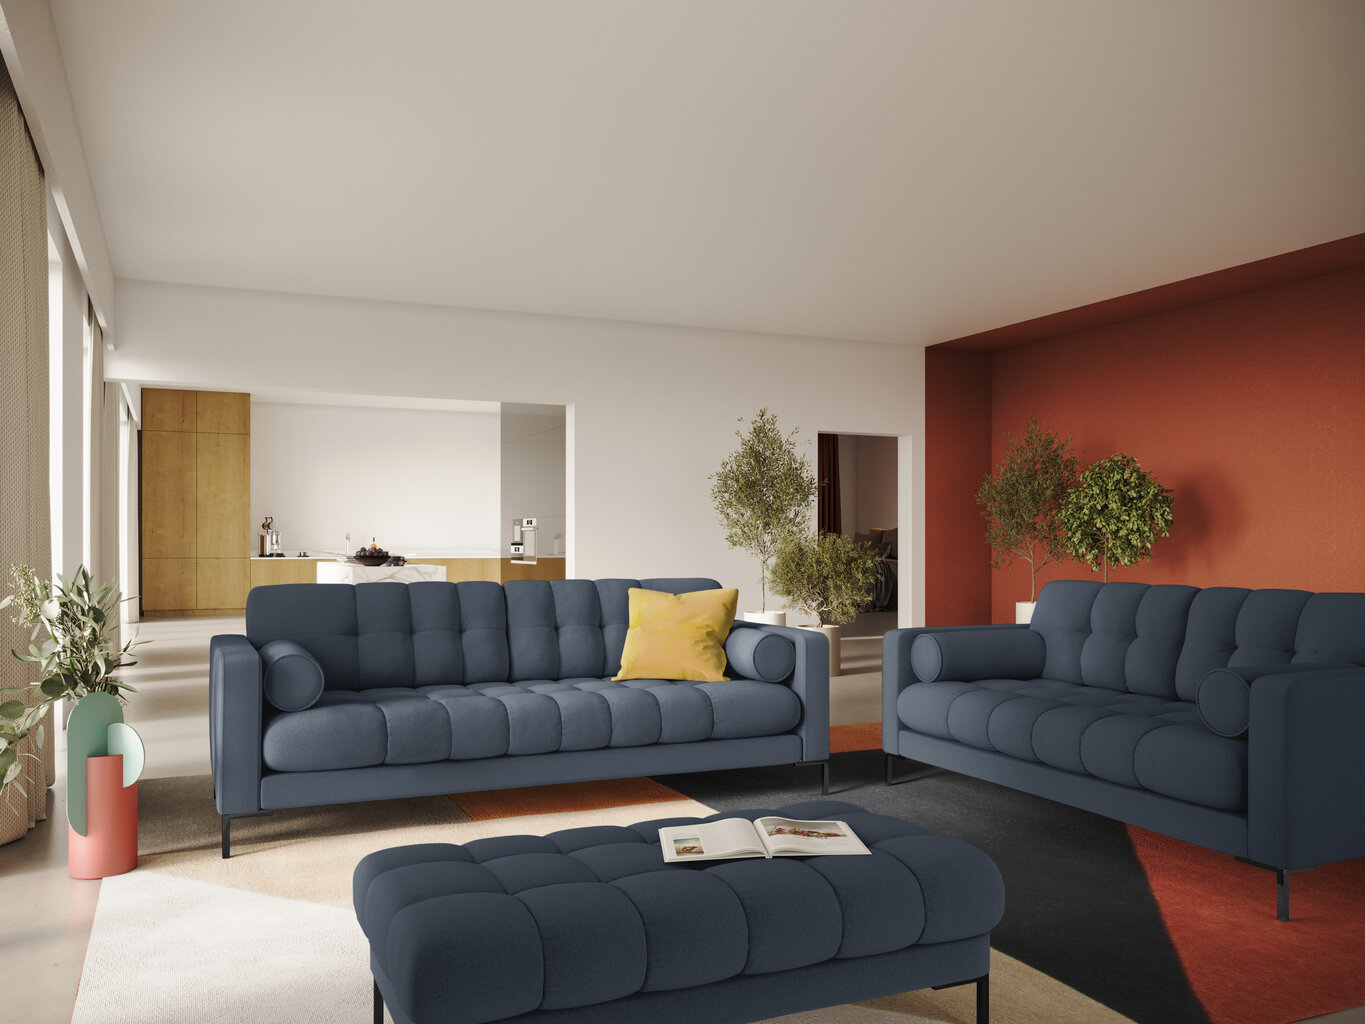 Sofa Cosmopolitan Design Bali 3S, tamsiai mėlyna/juoda kaina ir informacija | Sofos | pigu.lt